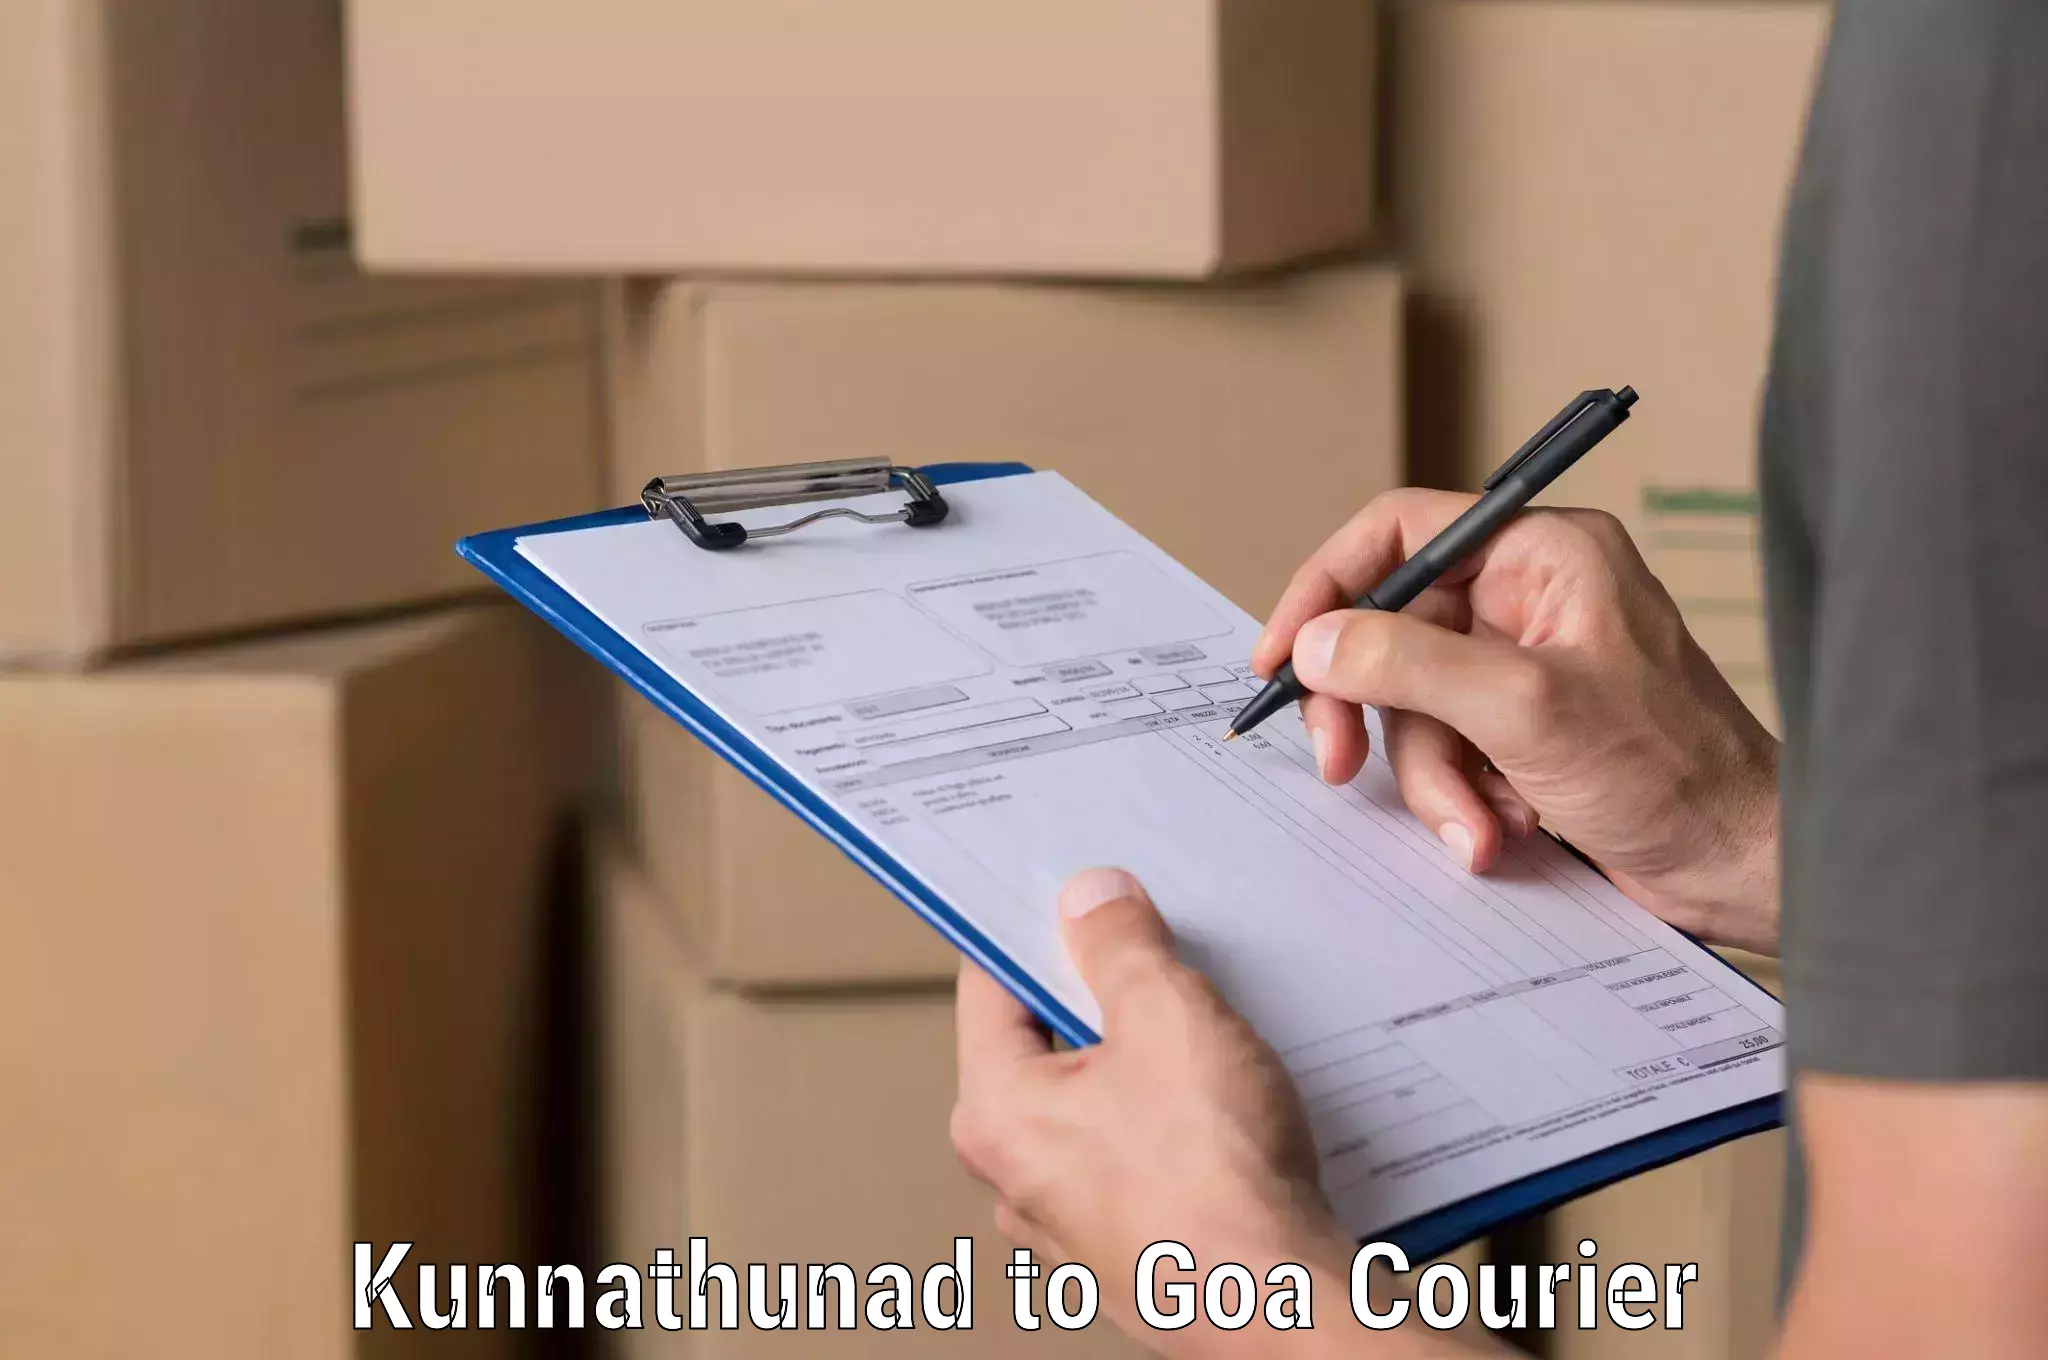 Rapid freight solutions Kunnathunad to Goa University